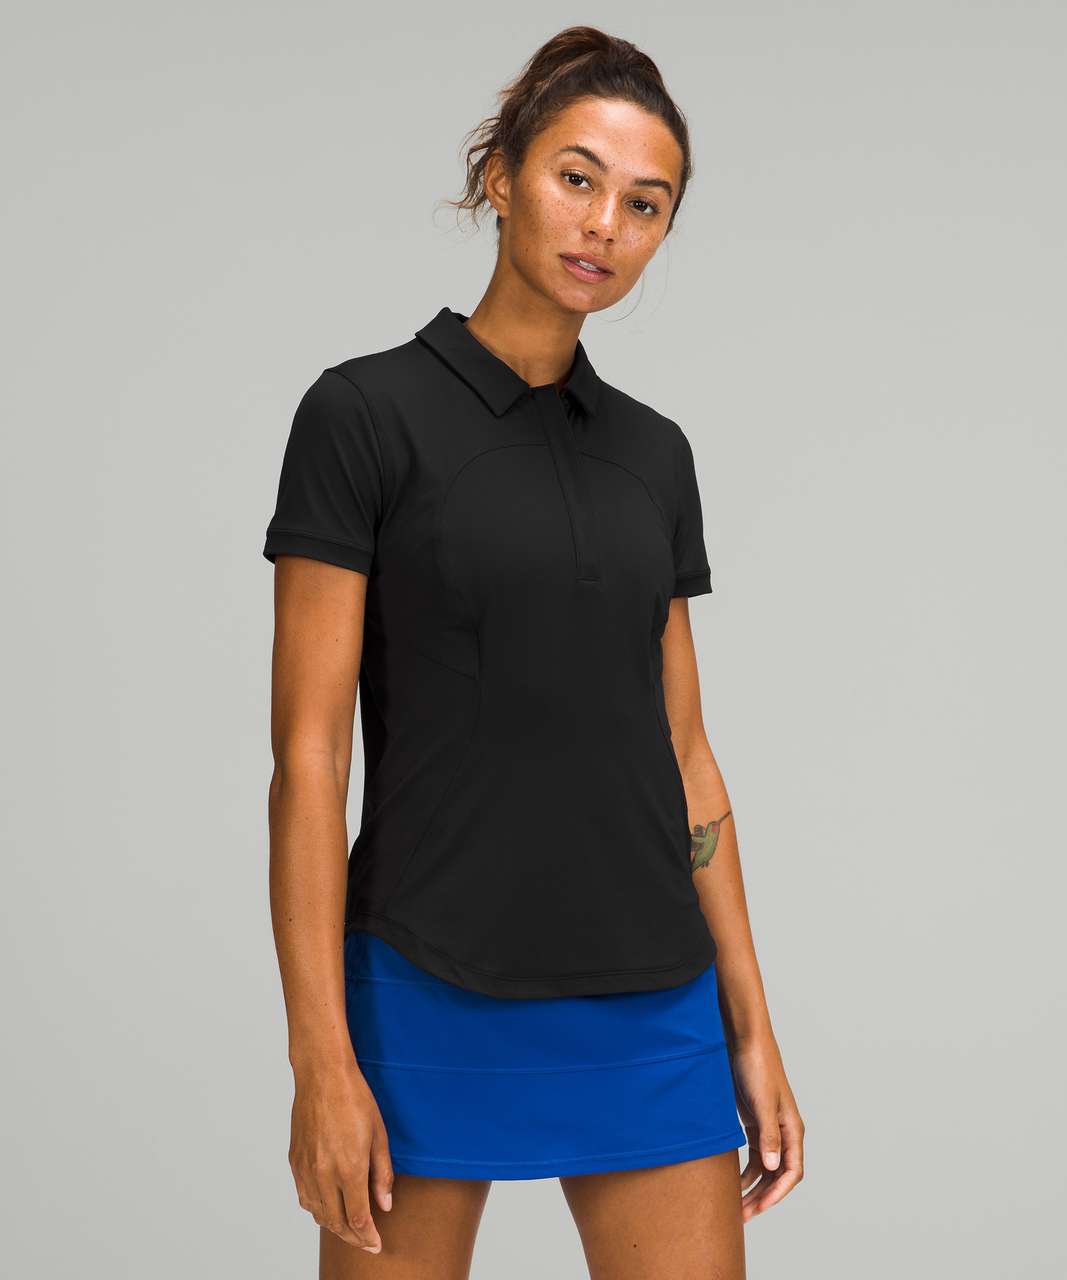 Lululemon Quick-Drying Short Sleeve Polo Shirt - Black